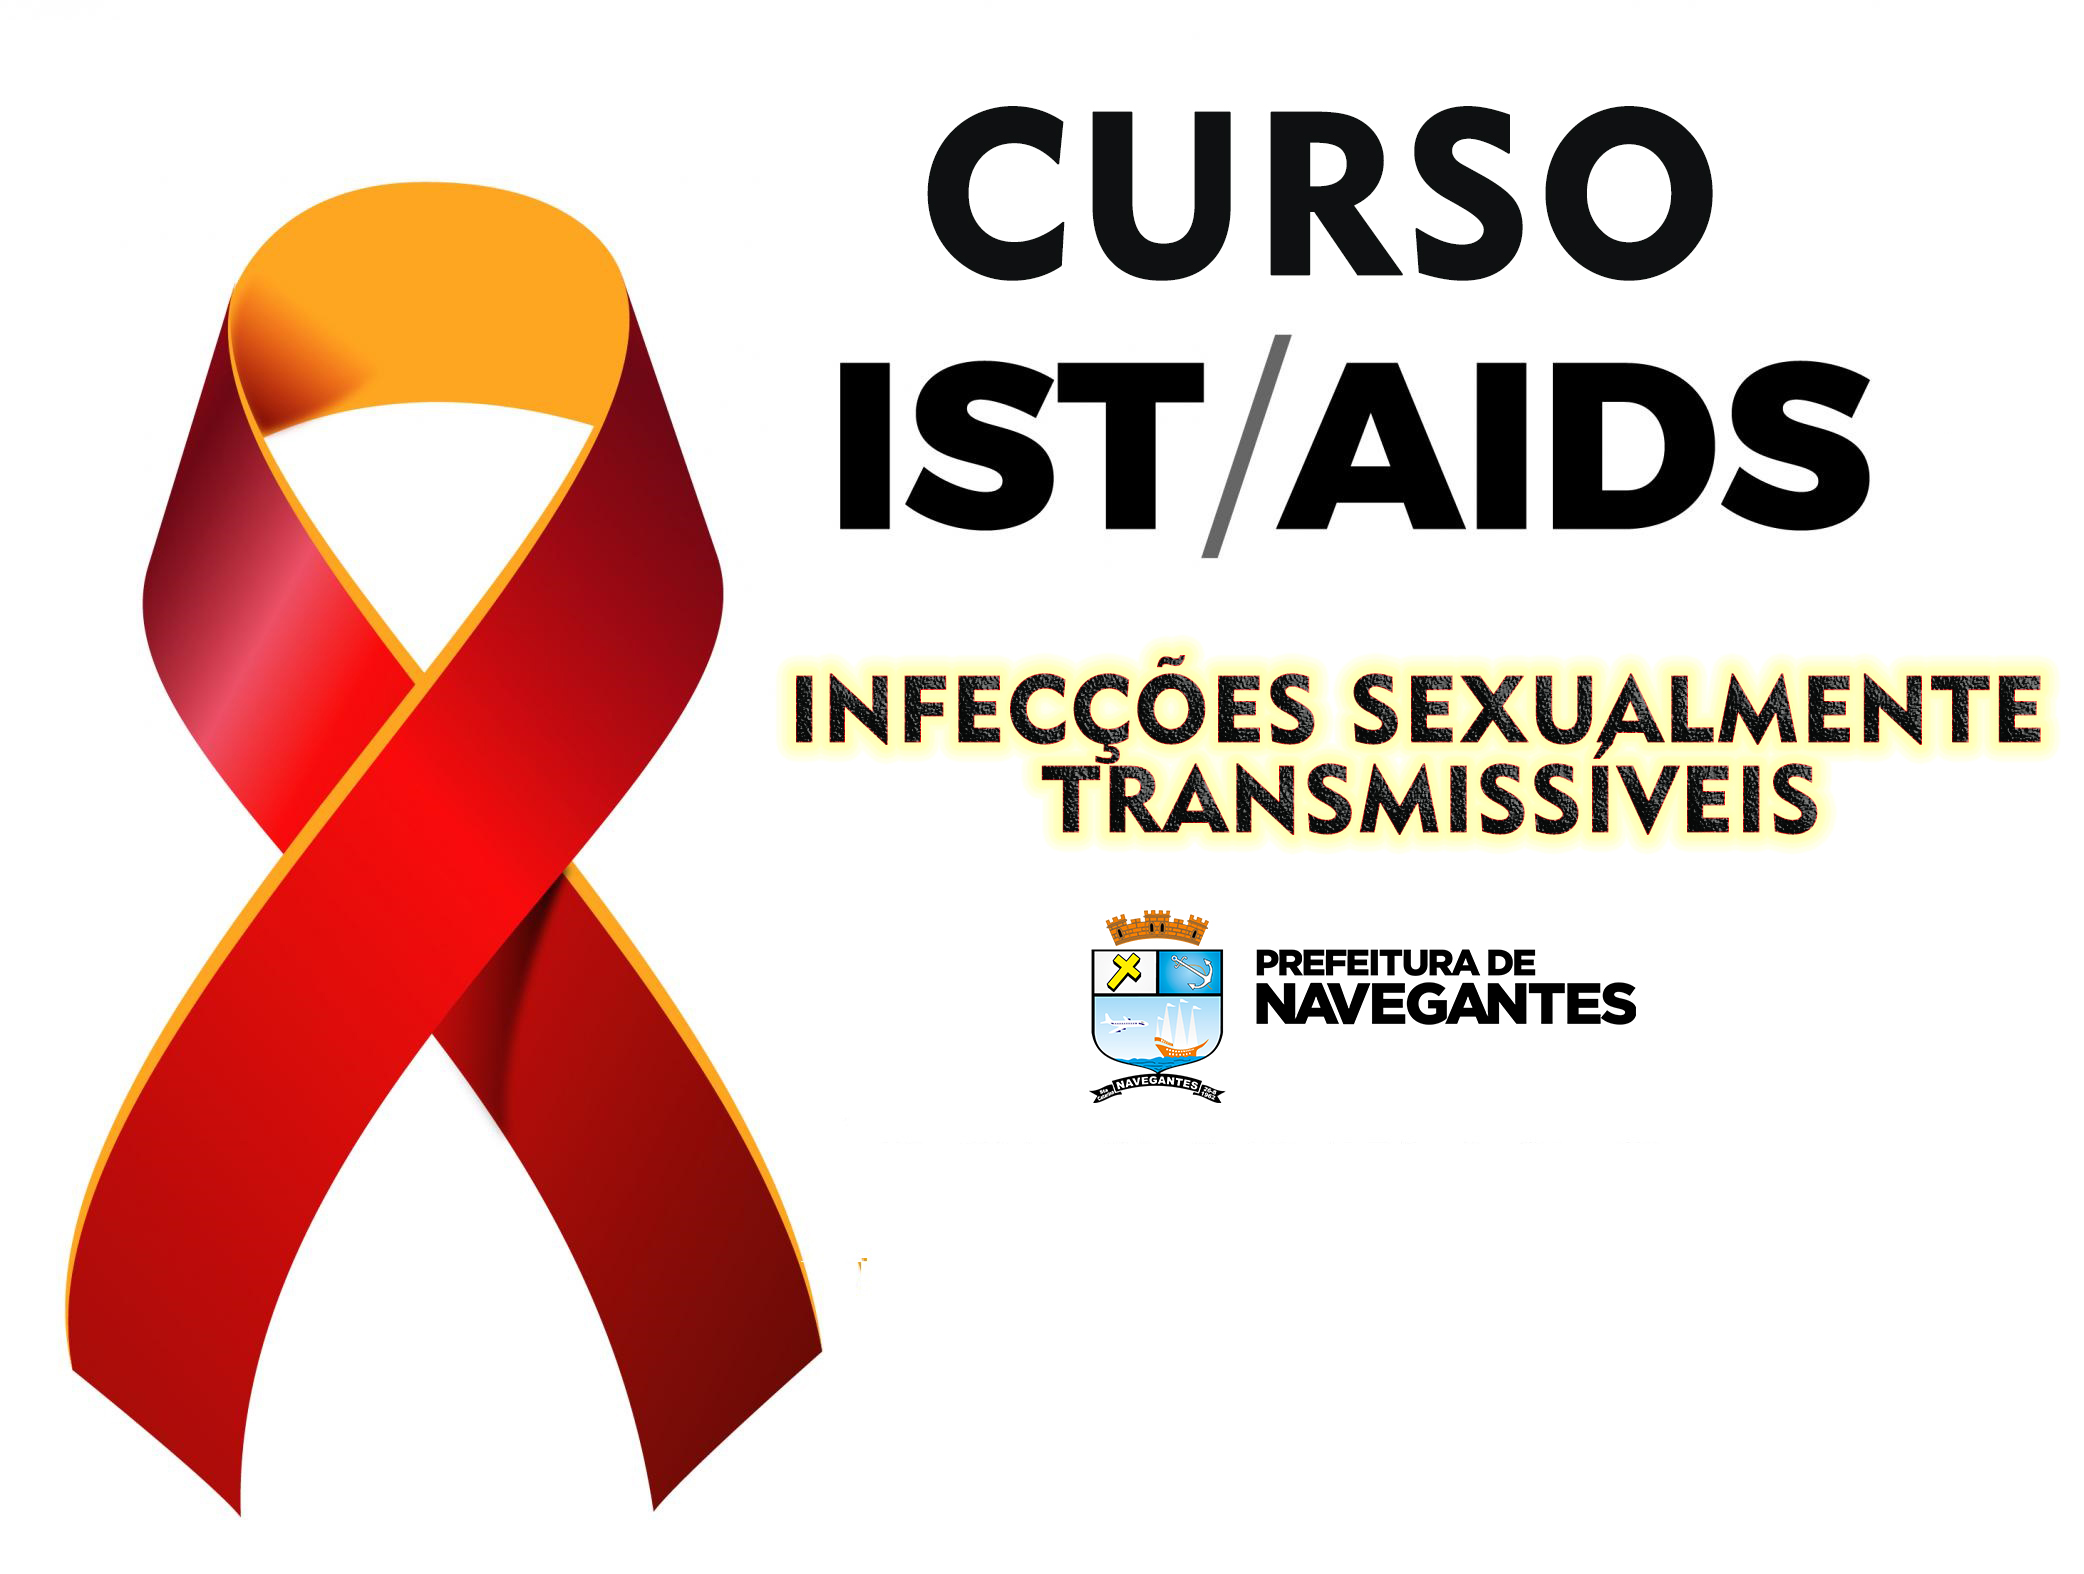 CURSO SOBRE “INFECÇÕES SEXUALMENTE TRANSMISSÍVEIS” logo